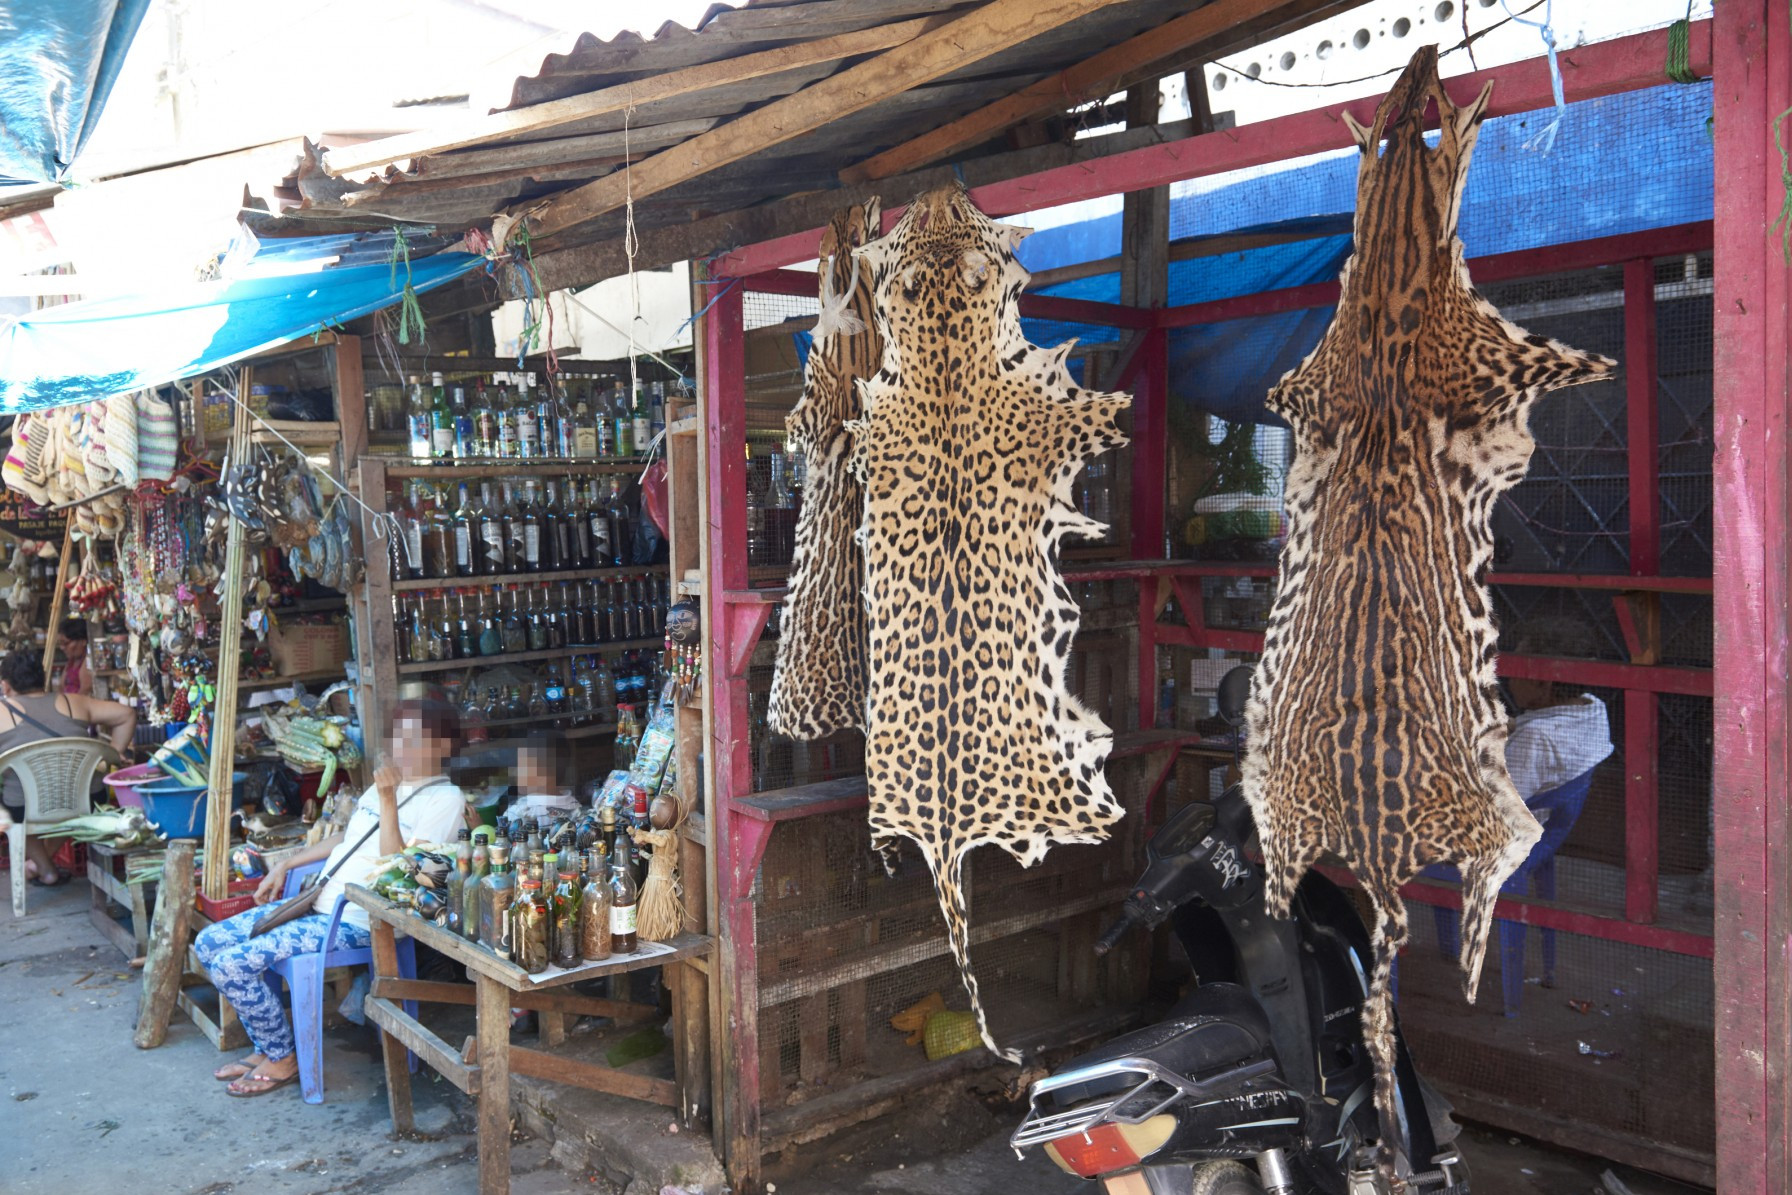 Jaguar skin hanging at the Belén market.